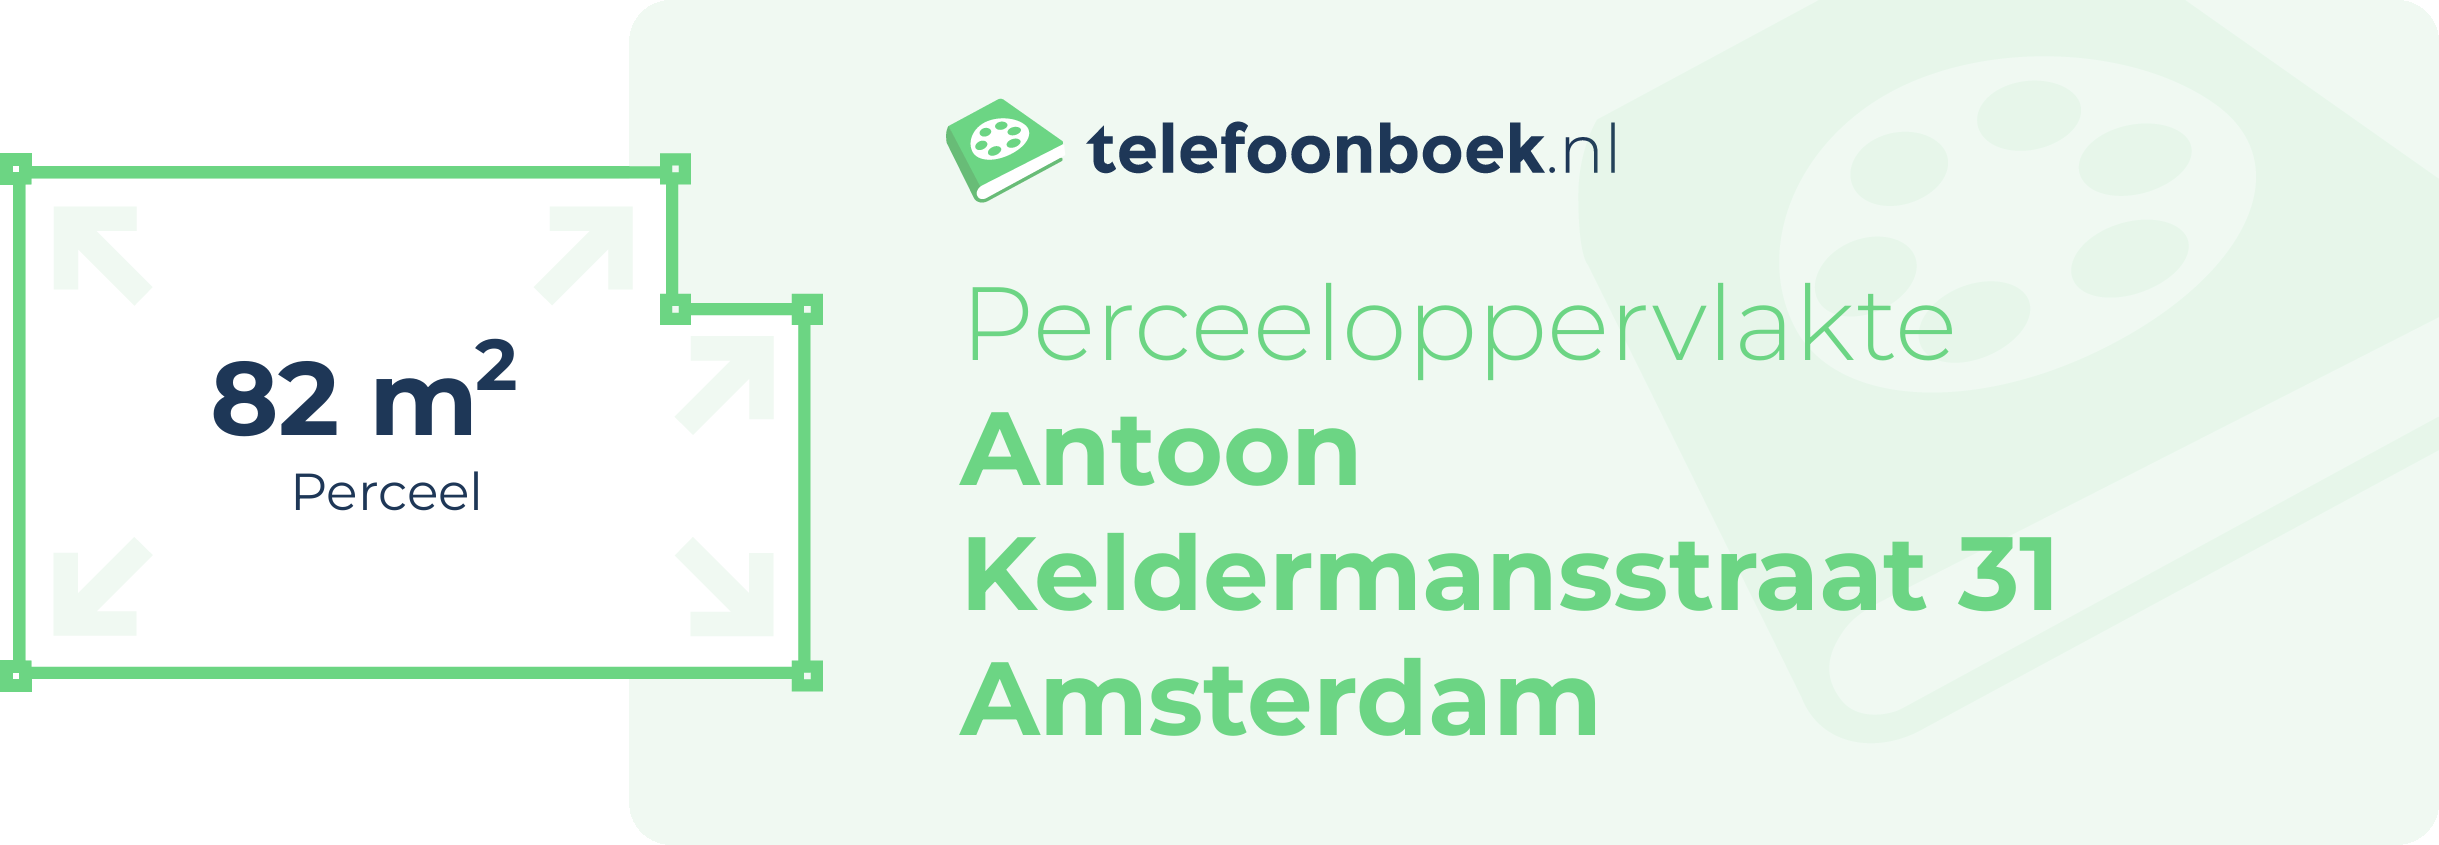 Perceeloppervlakte Antoon Keldermansstraat 31 Amsterdam